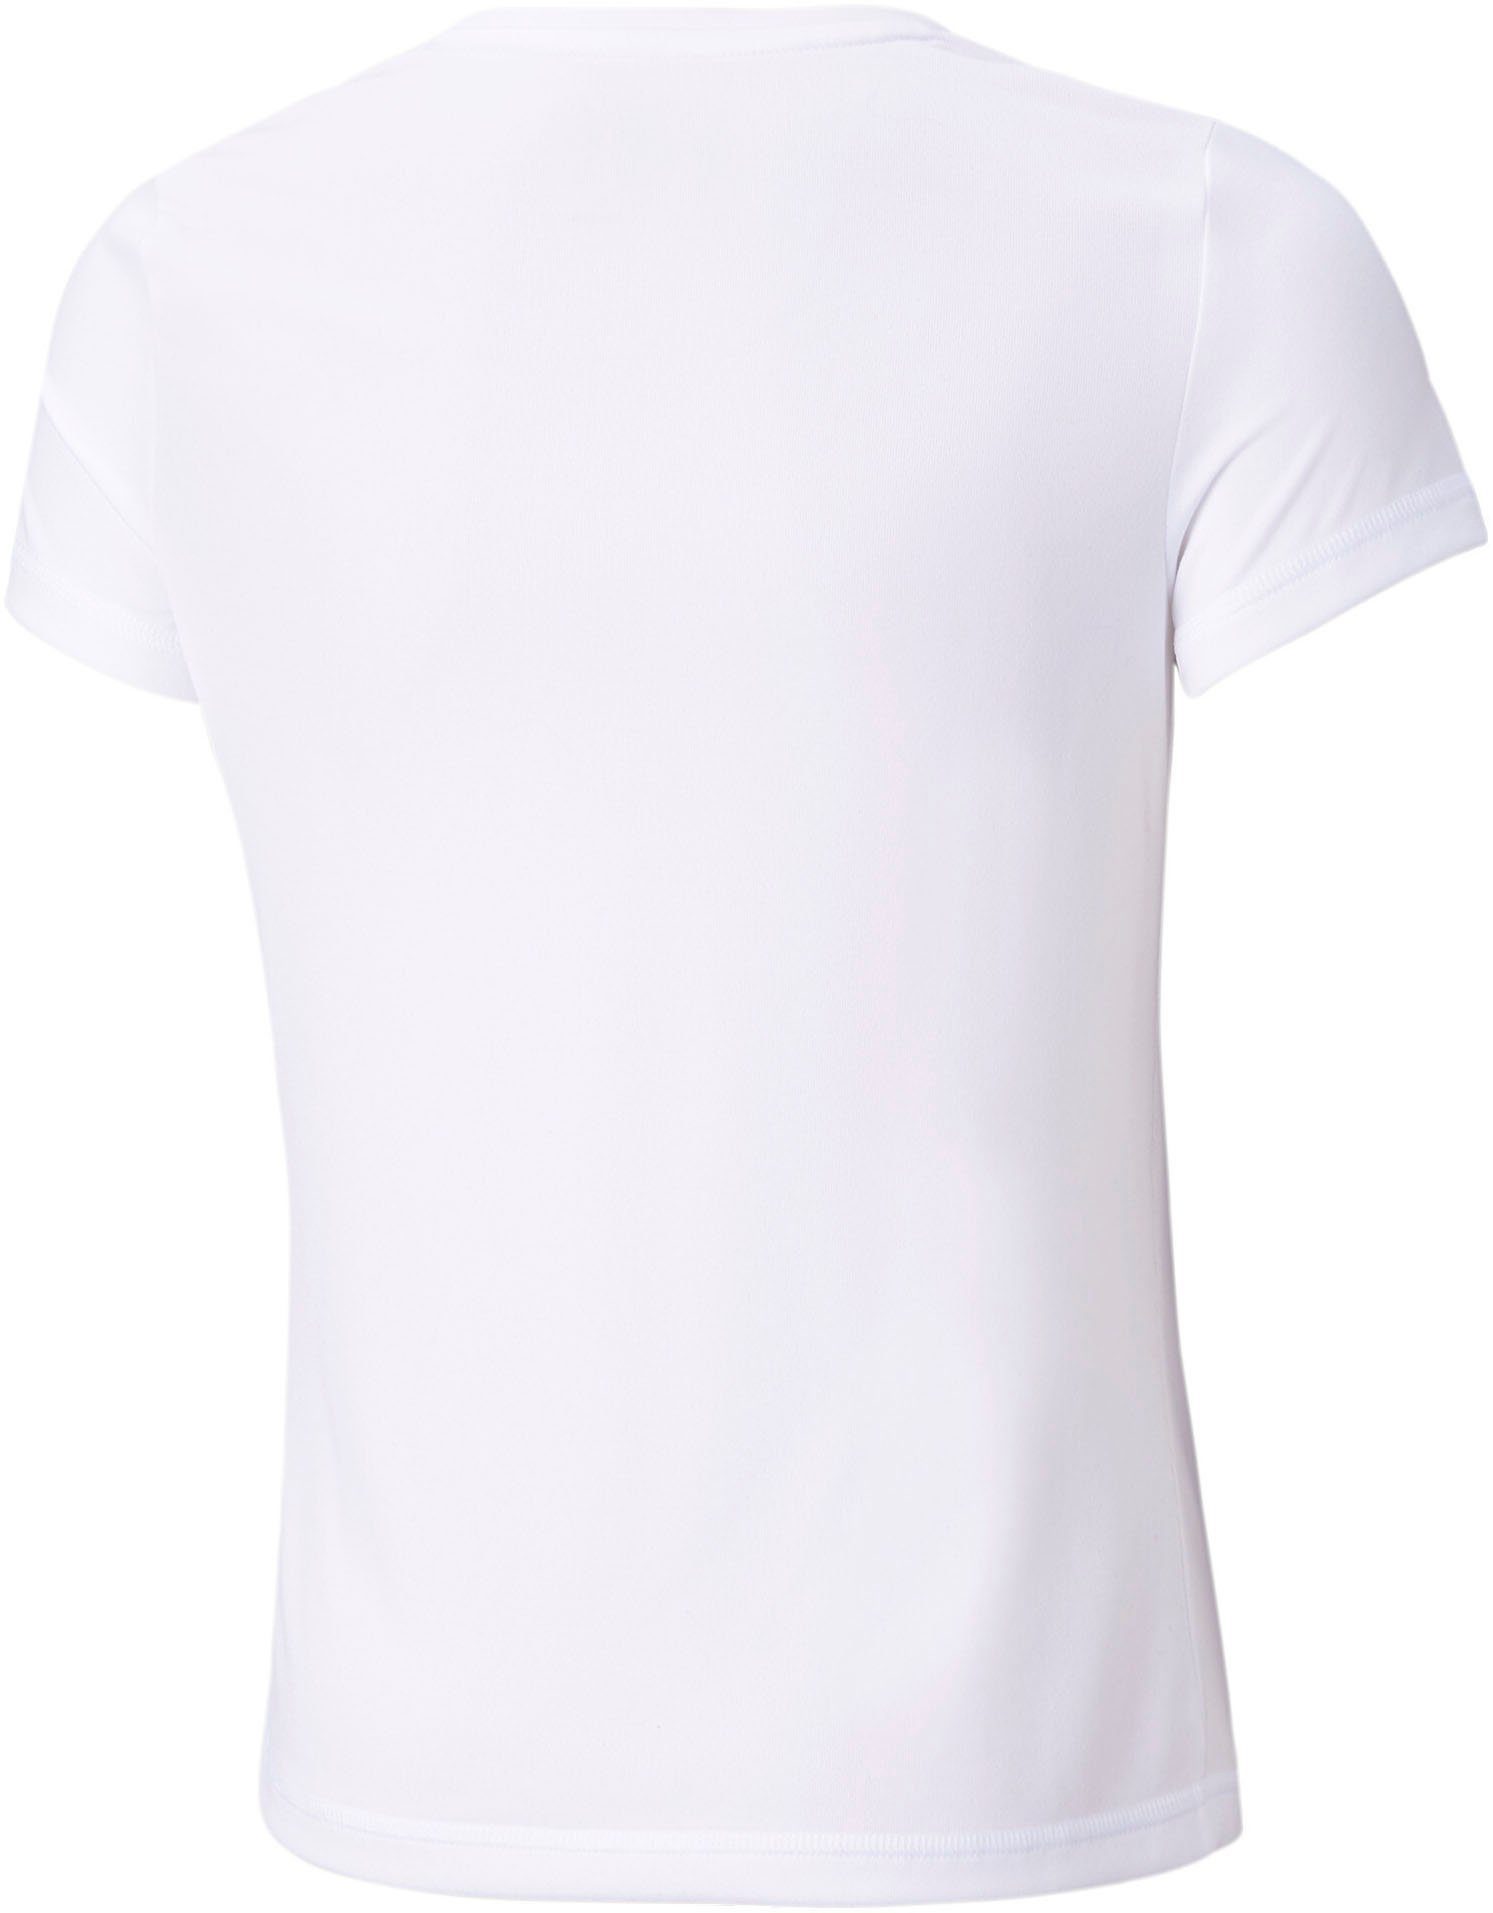 TEE PUMA ACTIVE G White T-Shirt Puma